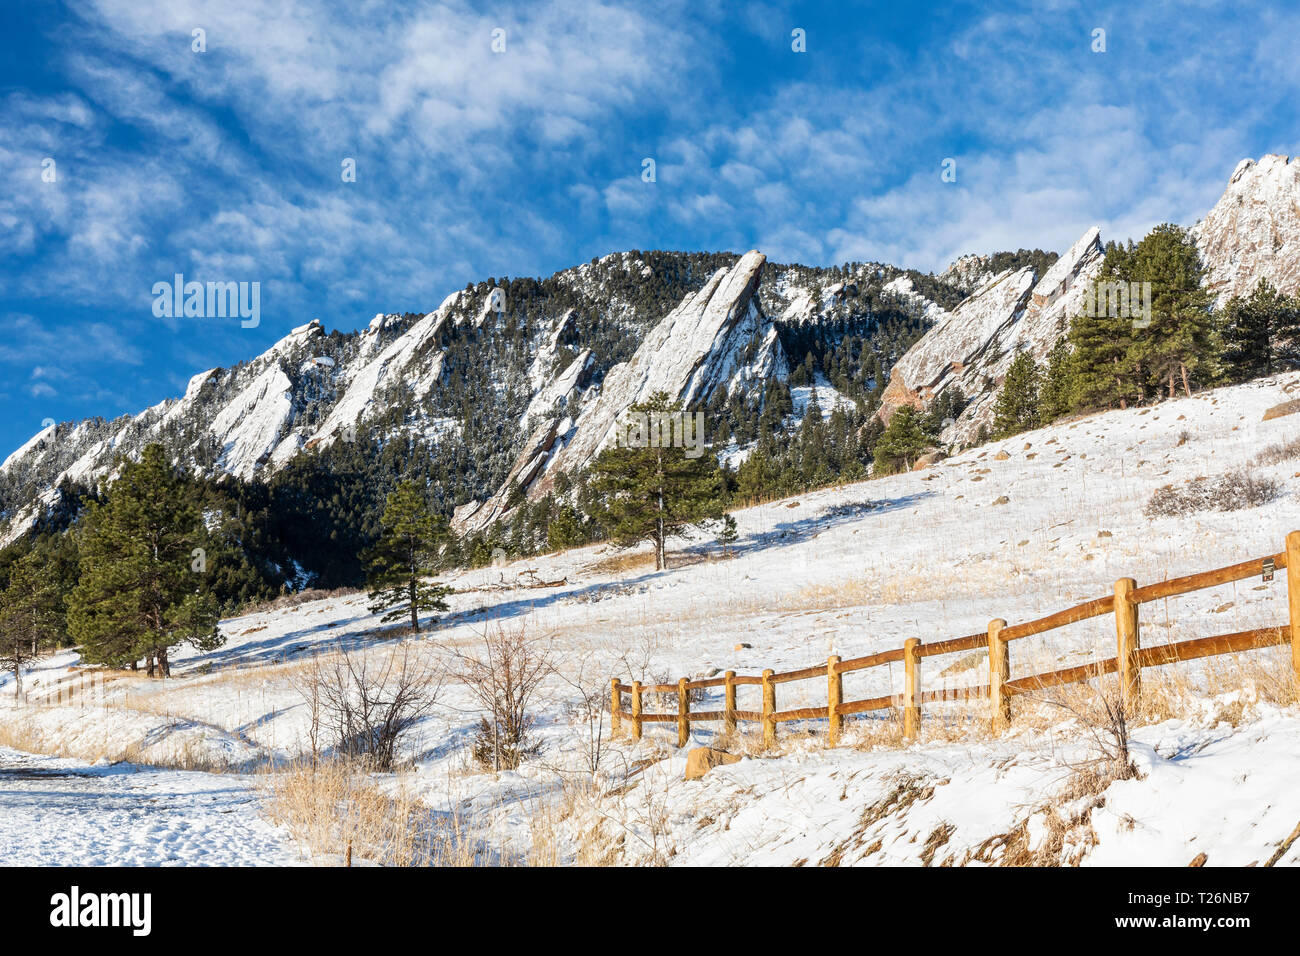 Una nueva capa de nieve recubre el Flations formaciones rocosas, visto desde Chautauqua Park en Boulder, Colorado Foto de stock